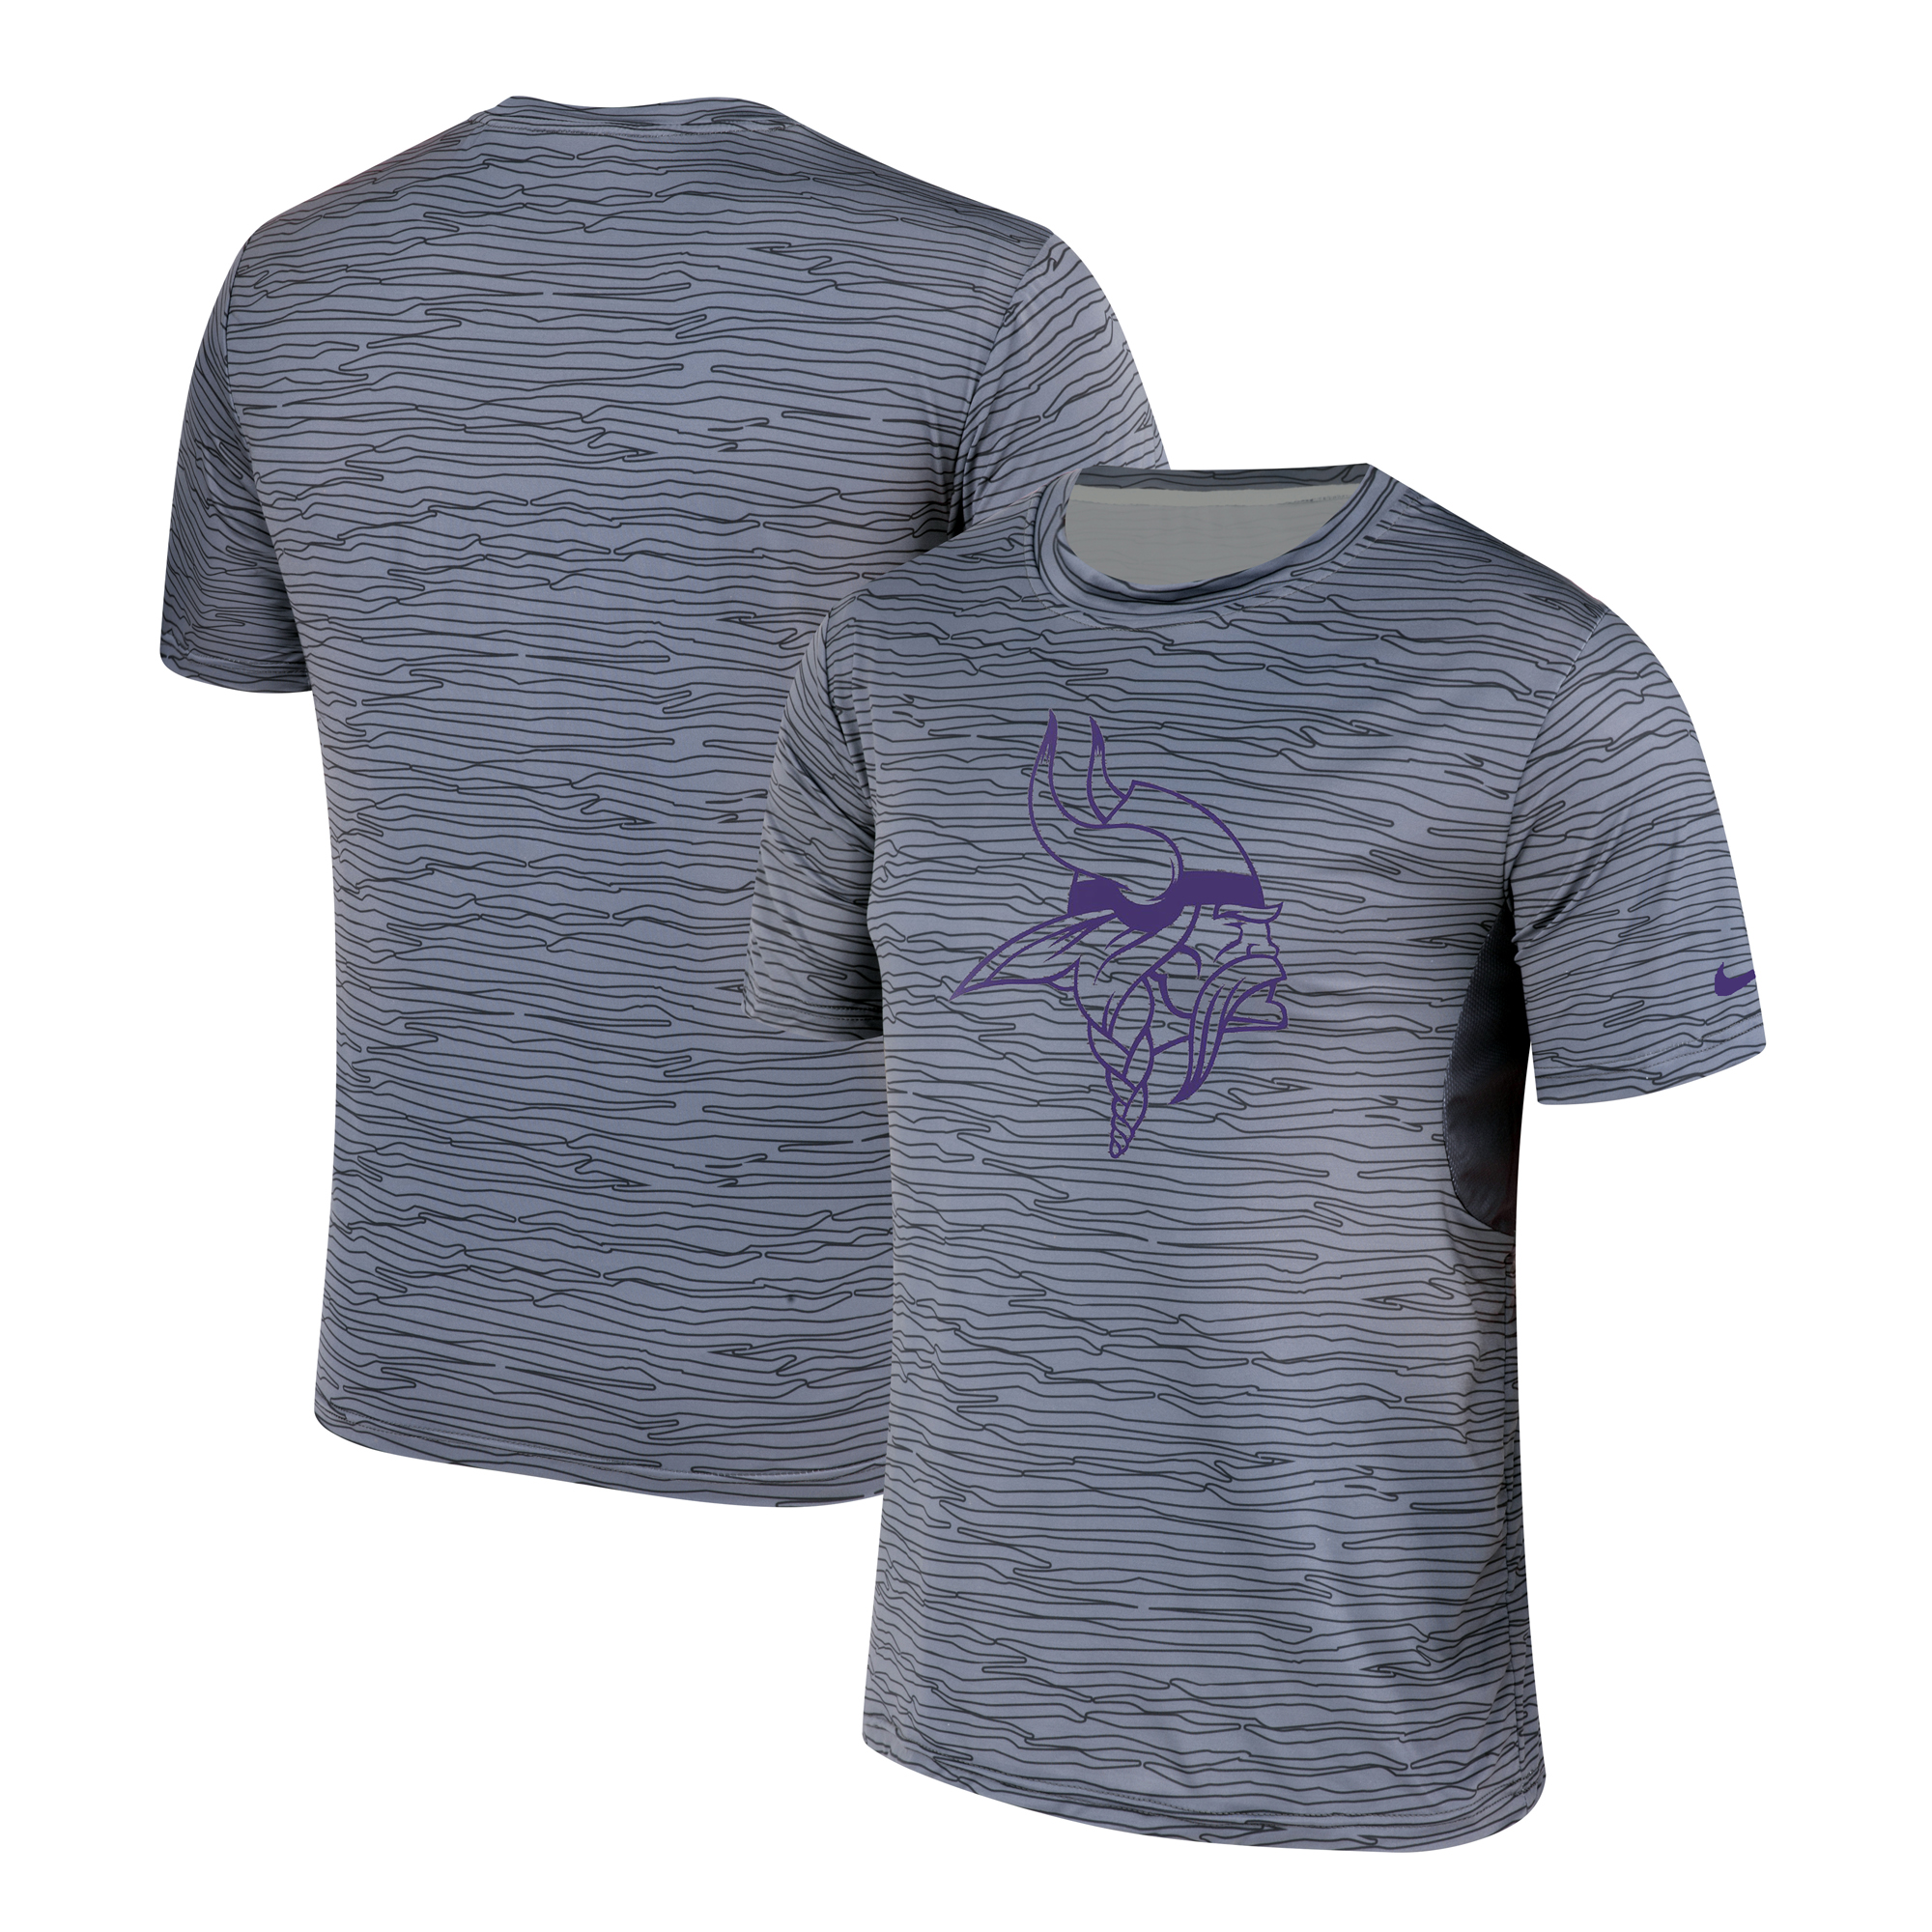 Men's Minnesota Vikings Nike Gray Black Striped Logo Performance T-Shirt